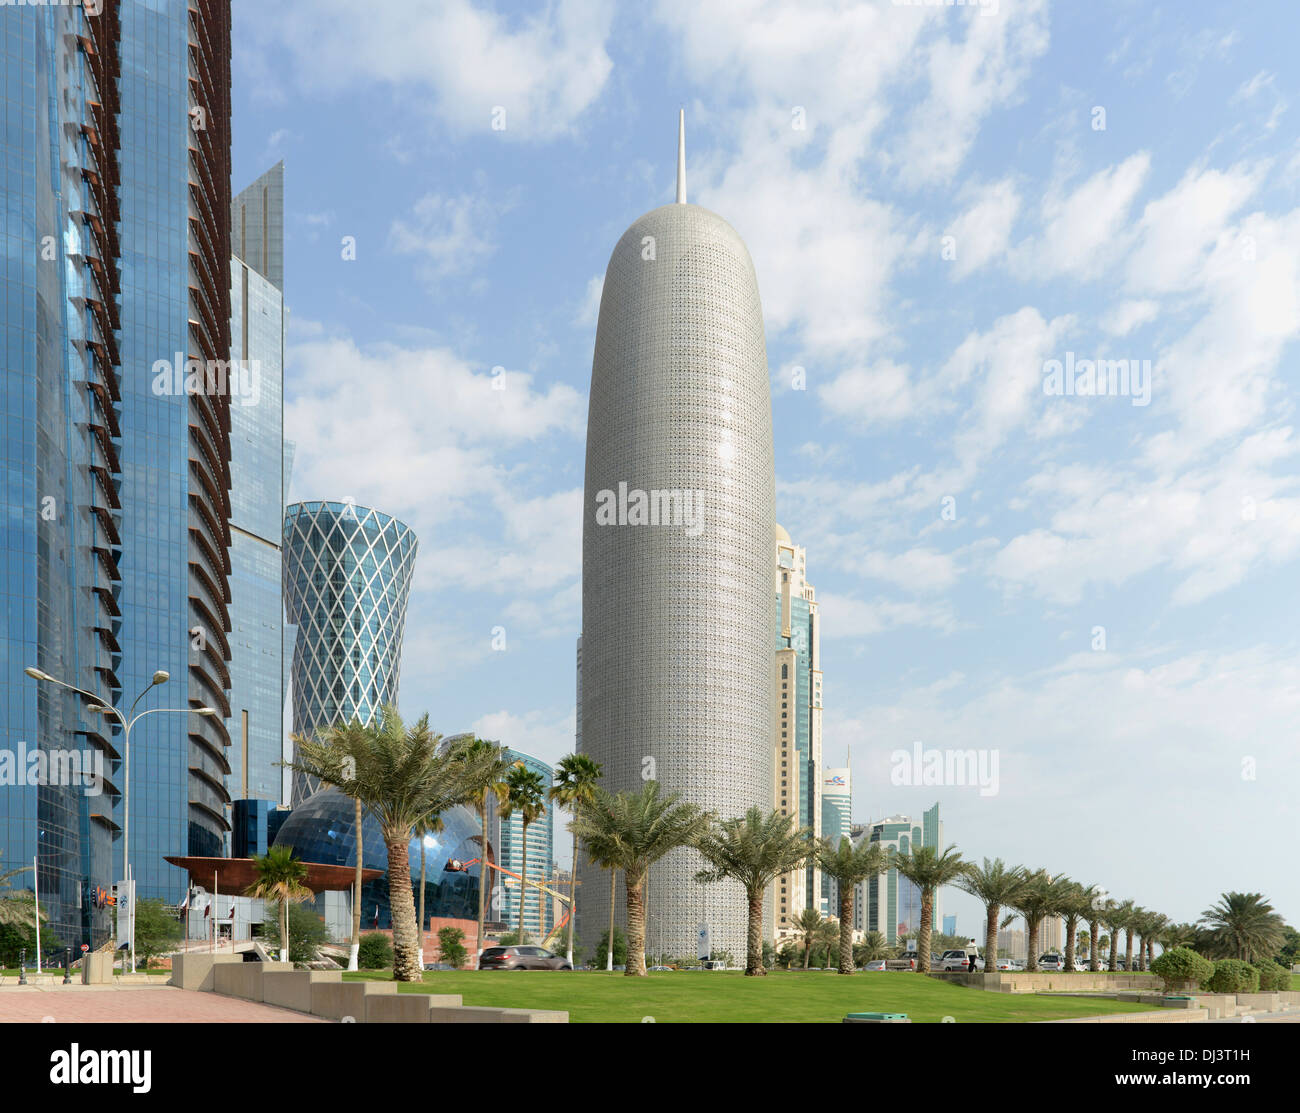 Burj Tower in Doha, Katar Doha, Qatar. Architekt: Ateliers Jean Nouvel, 2012. Blick von der Corniche, mit Palmen. Stockfoto